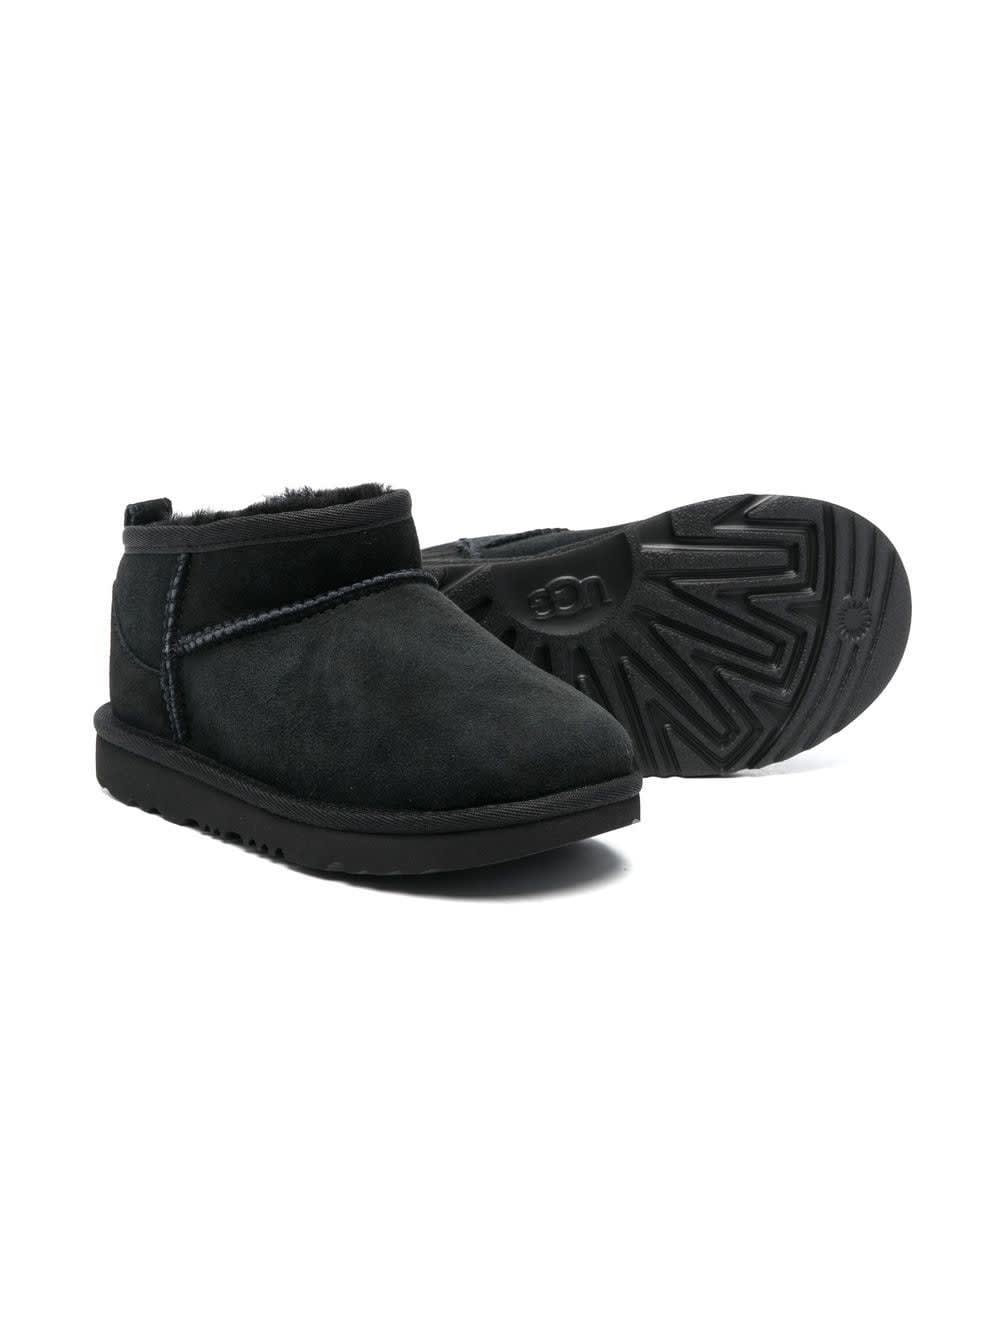 Shop Ugg Black Classic Ultra Mini Boots